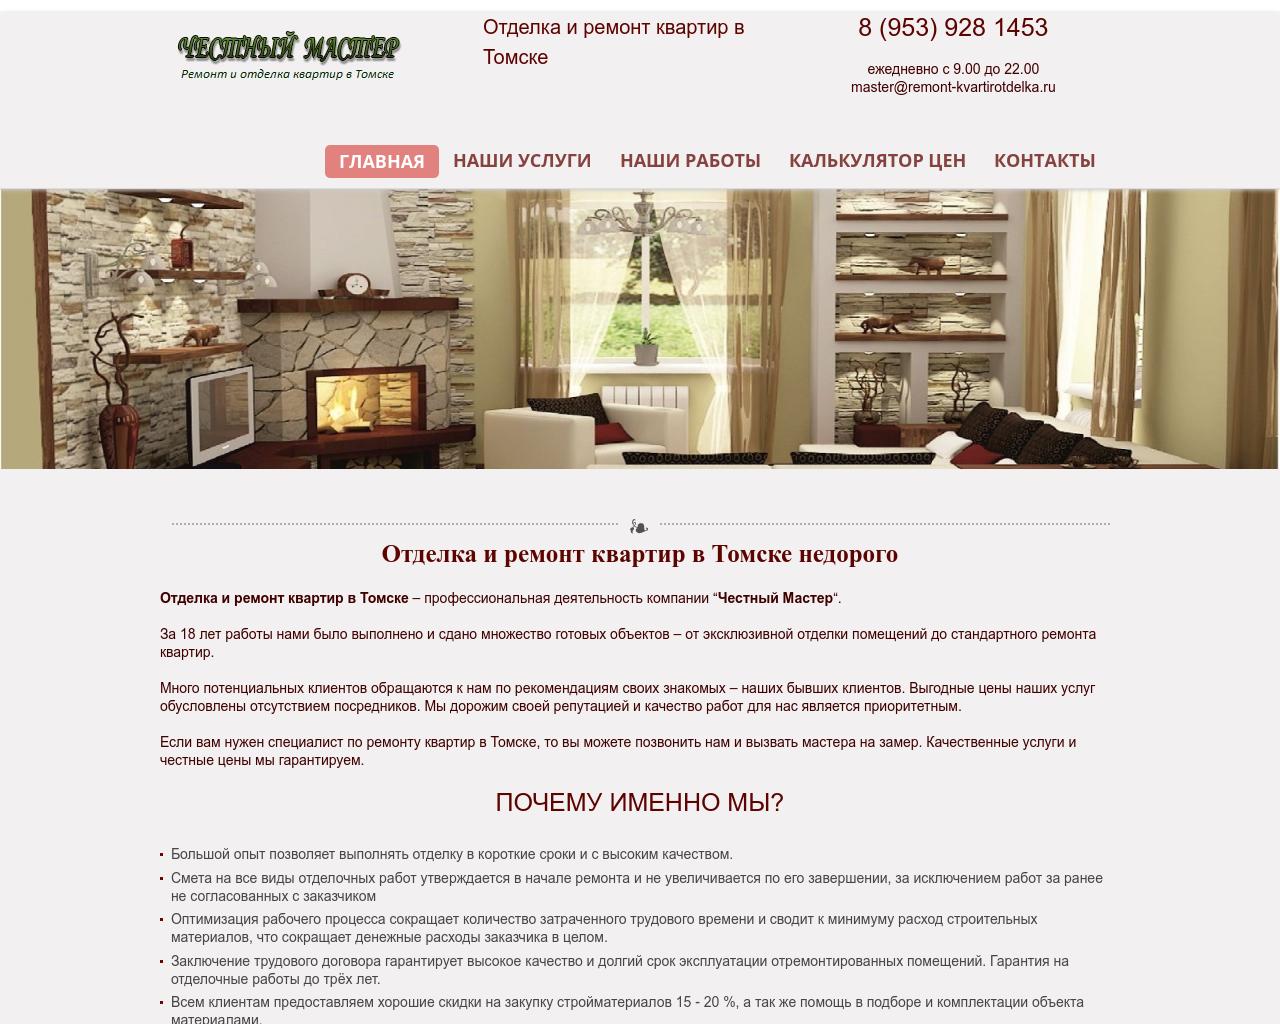 Изображение сайта remont-kvartirotdelka.ru в разрешении 1280x1024